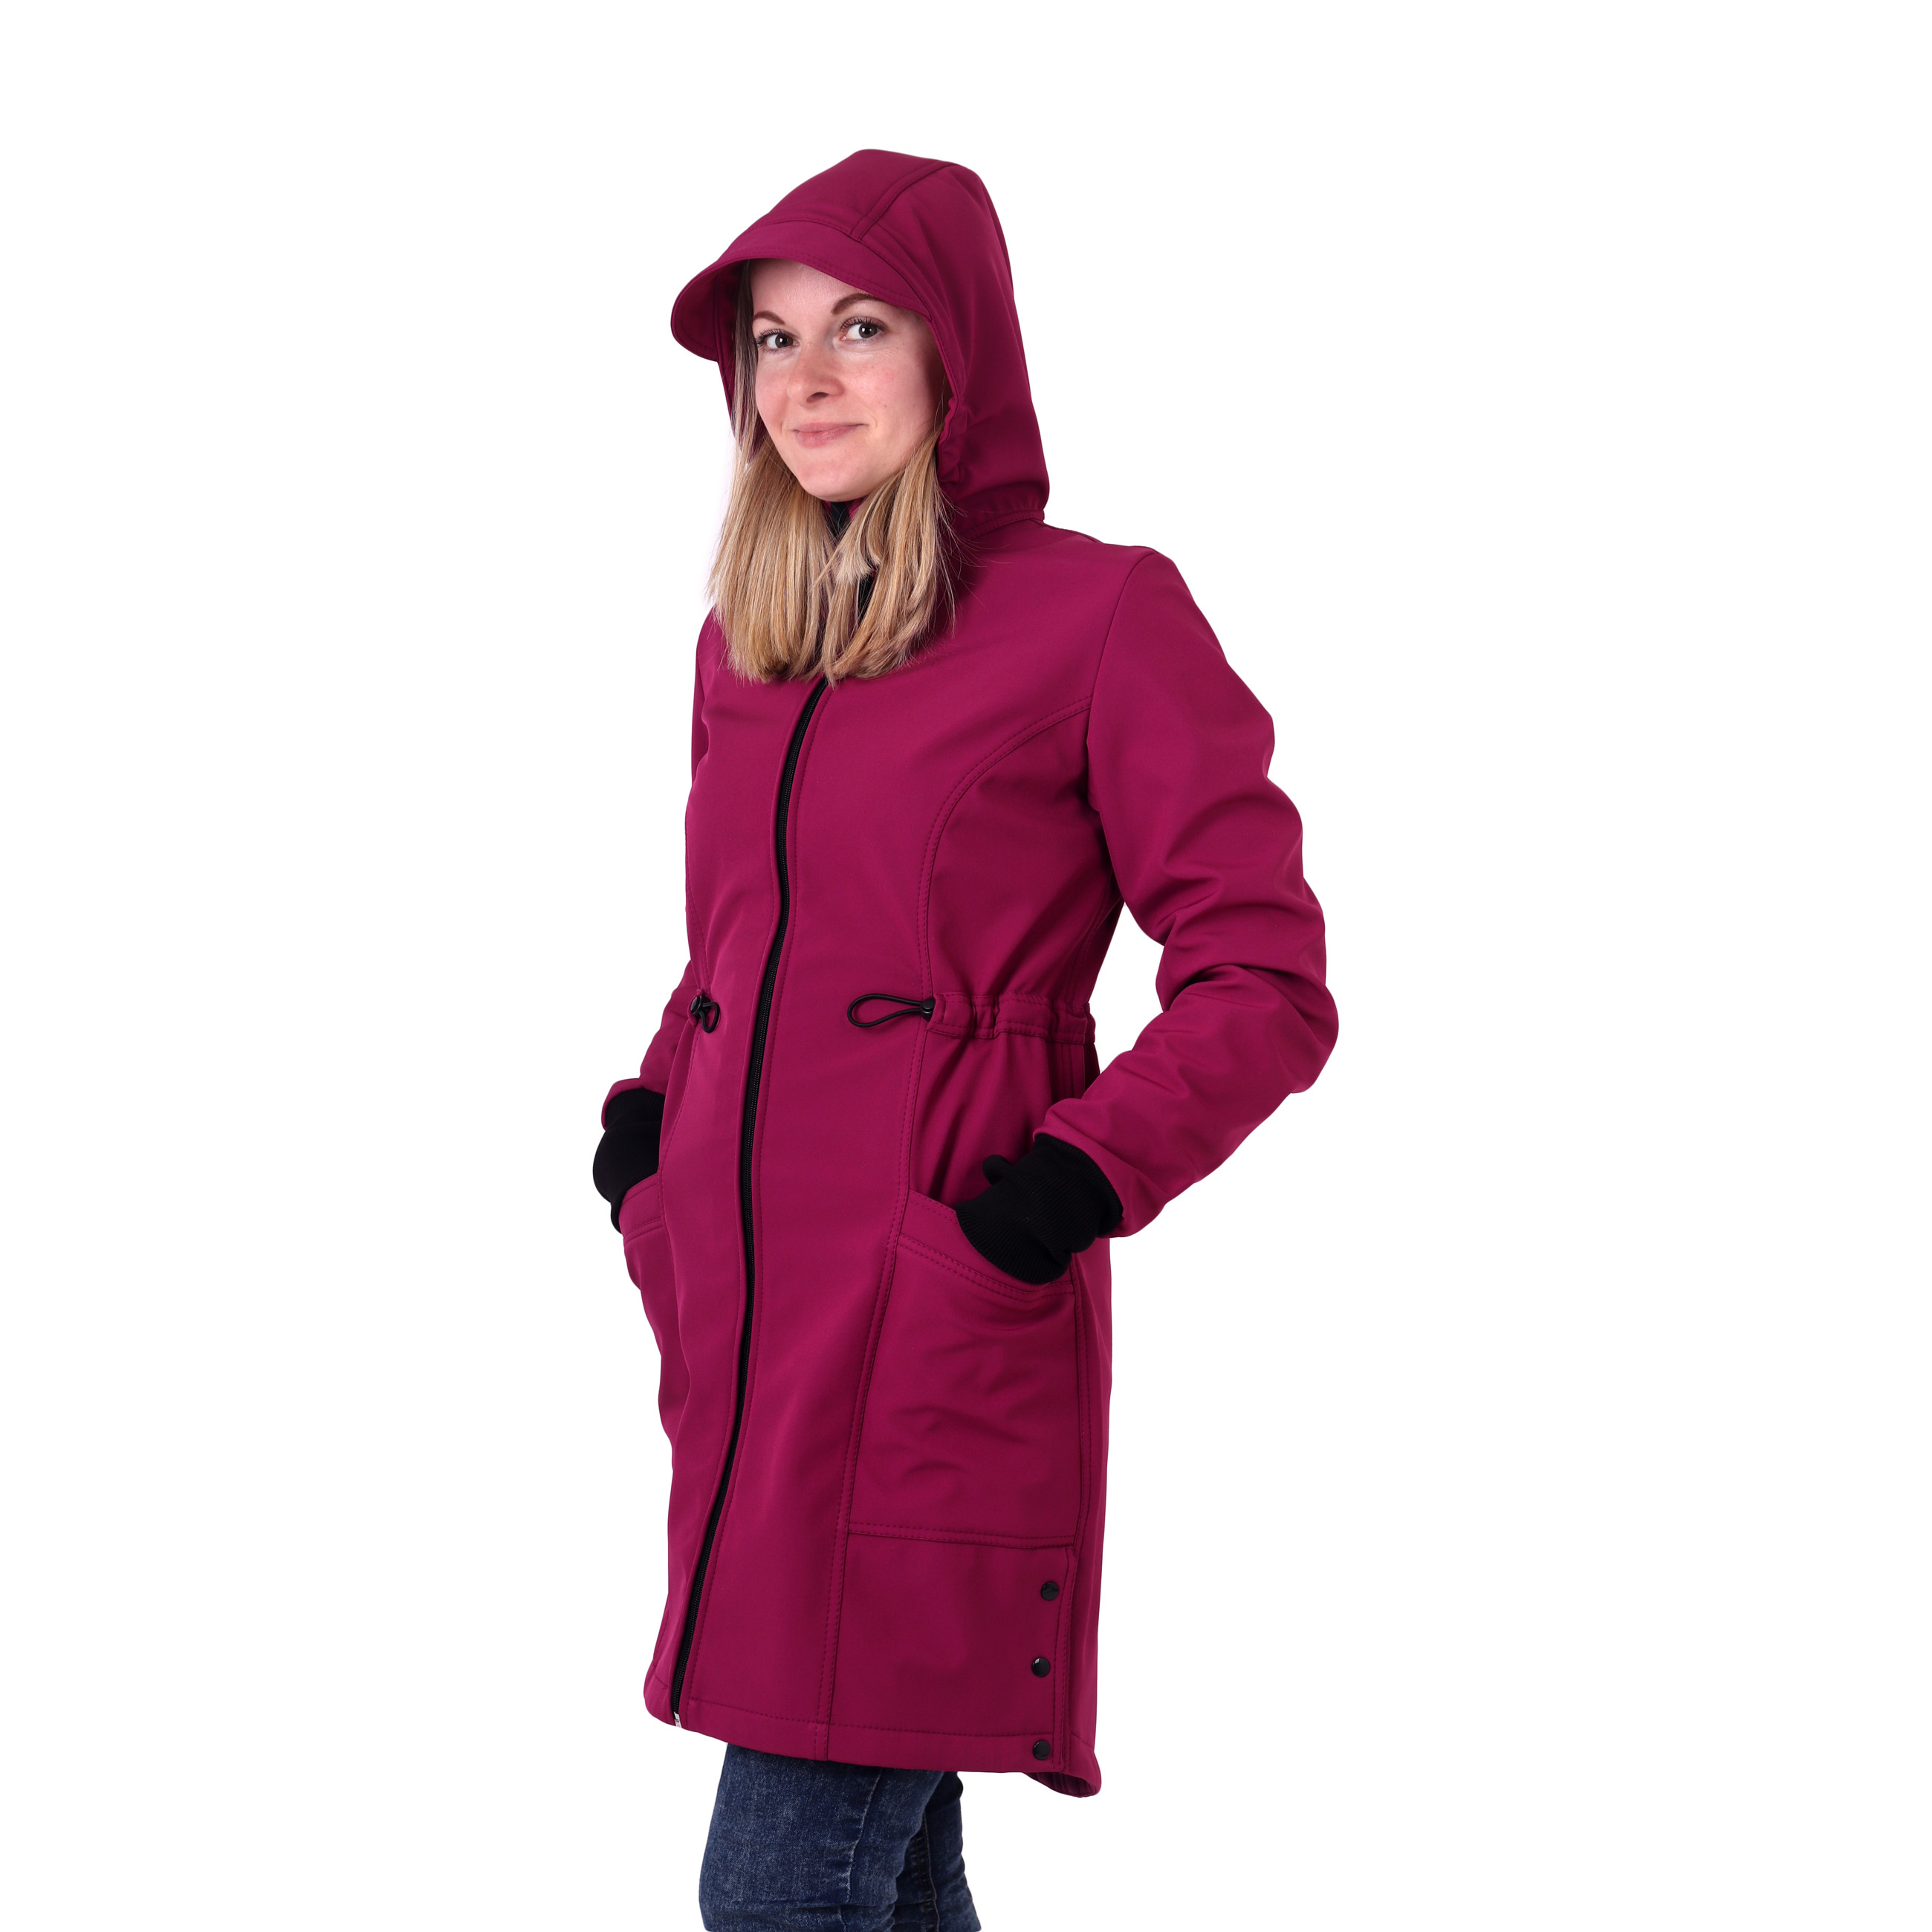 Women´s jackets and coats Hana, fuchsia